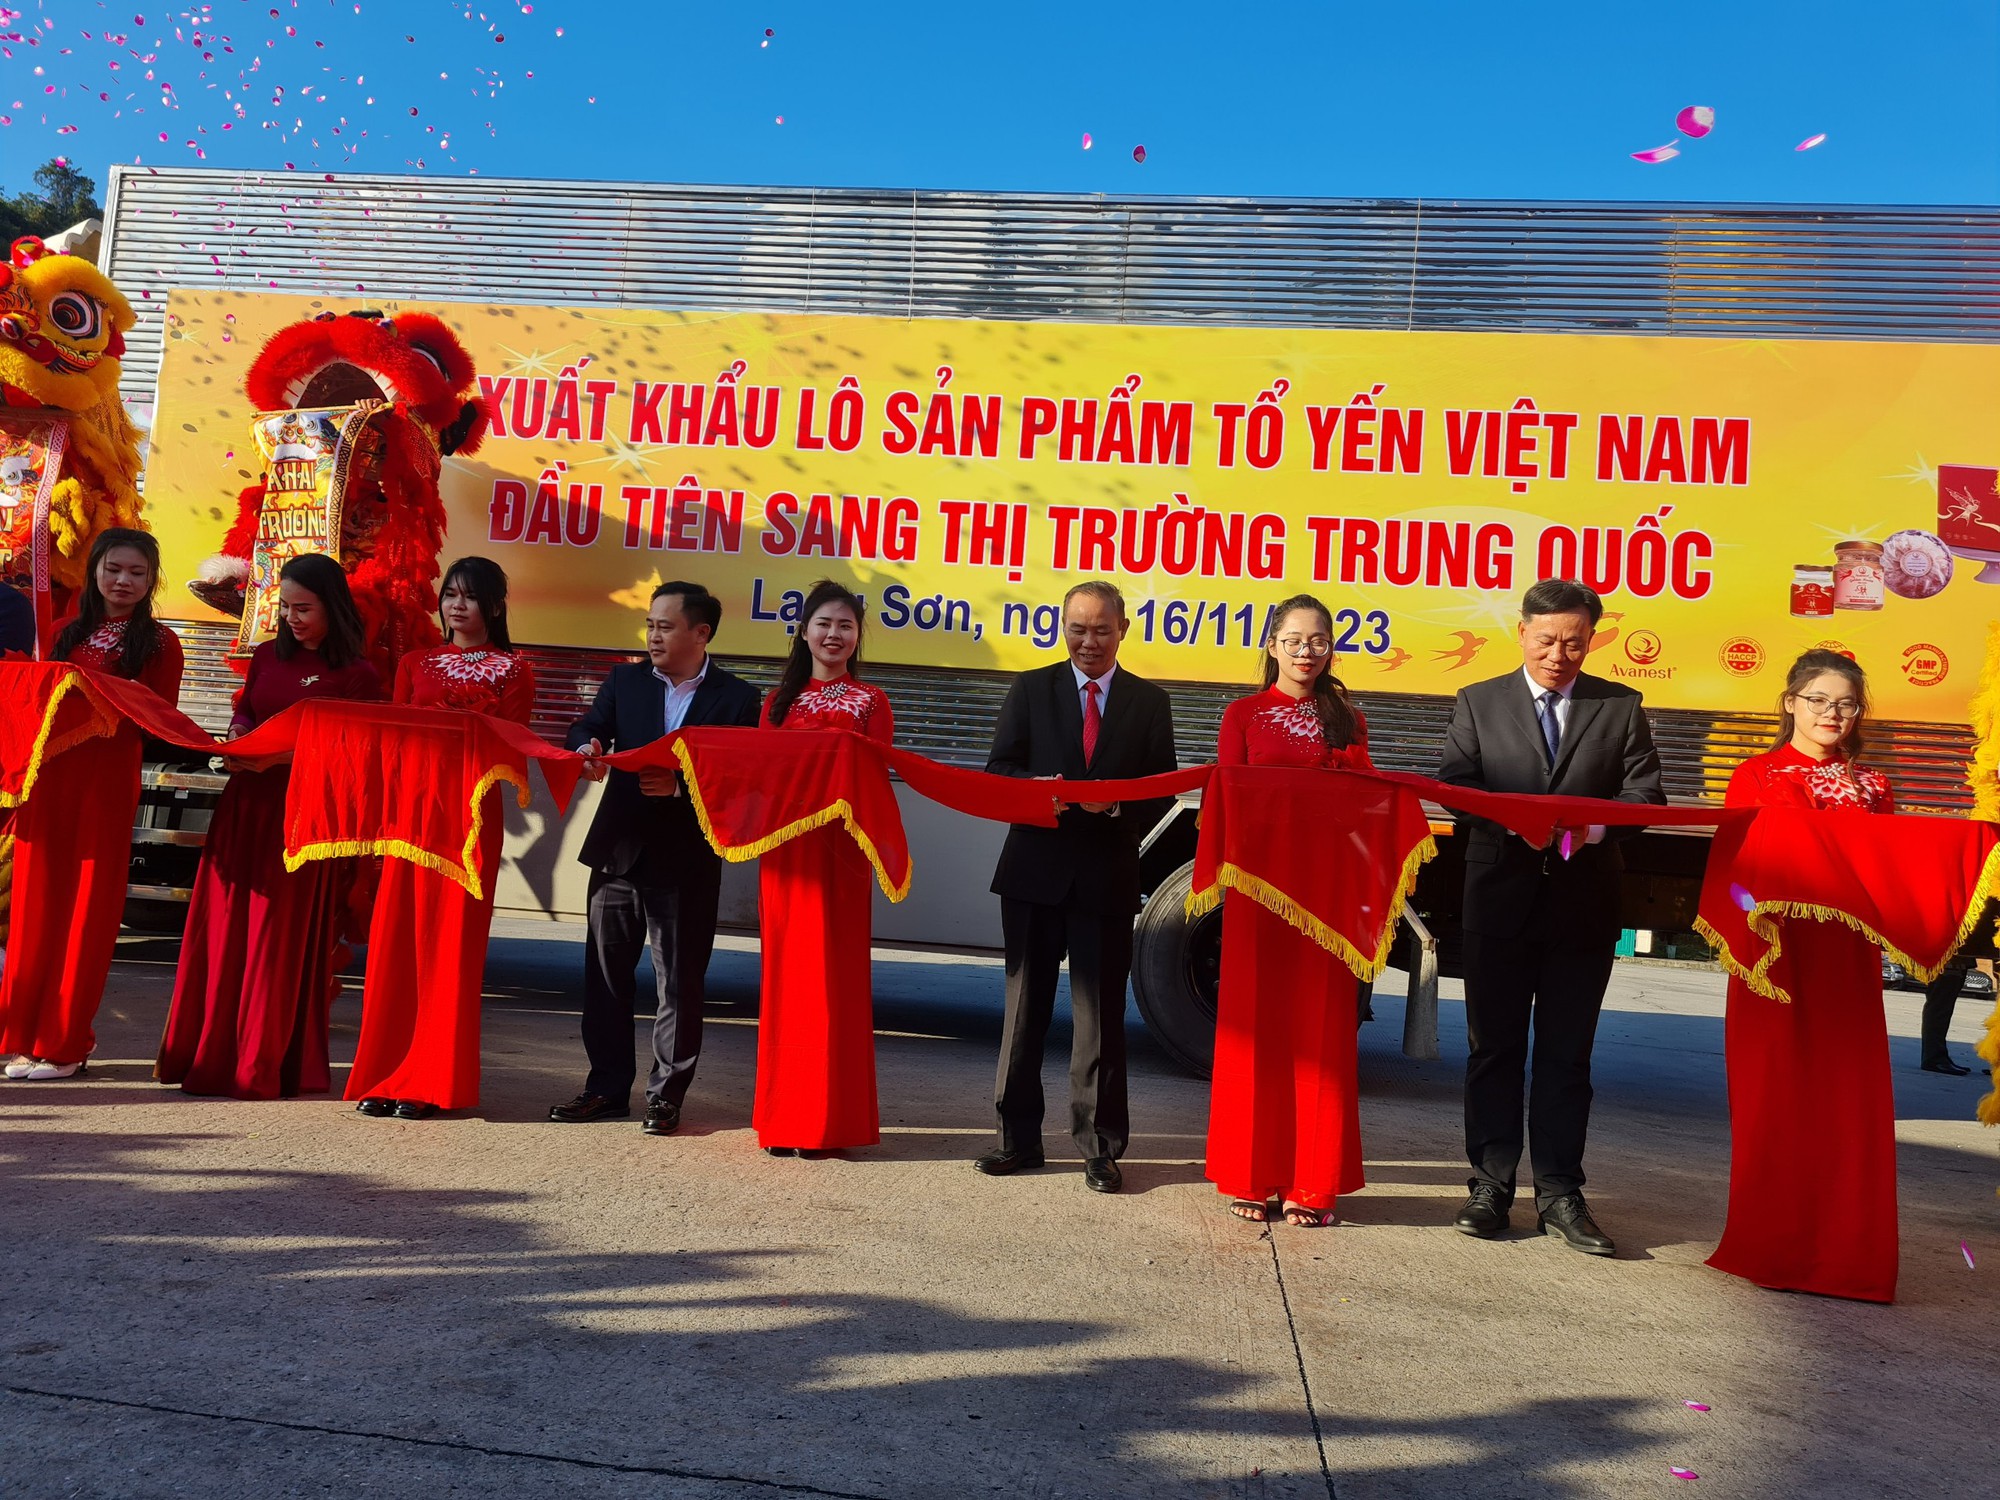 Trung Quốc cần mua 400 tấn tổ yến mỗi năm, cơ hội đưa ngành nuôi yến của Việt Nam thành ngành hàng tỷ đô - Ảnh 3.